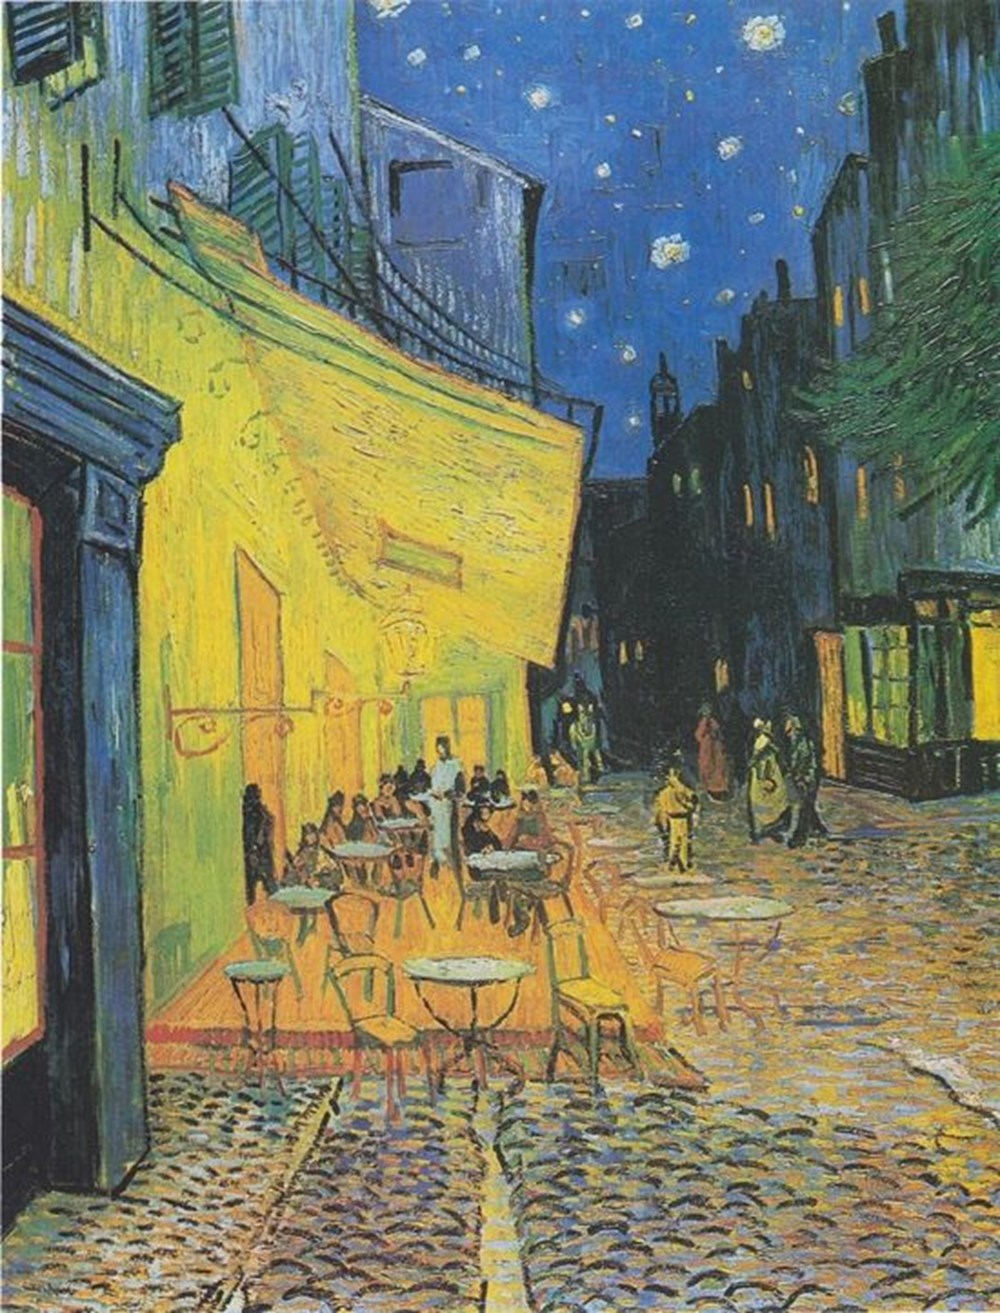 Ressam Vincent Van Gogh kulağını neden kesti? Van Gogh
şizofren mi dahi miydi? - 8